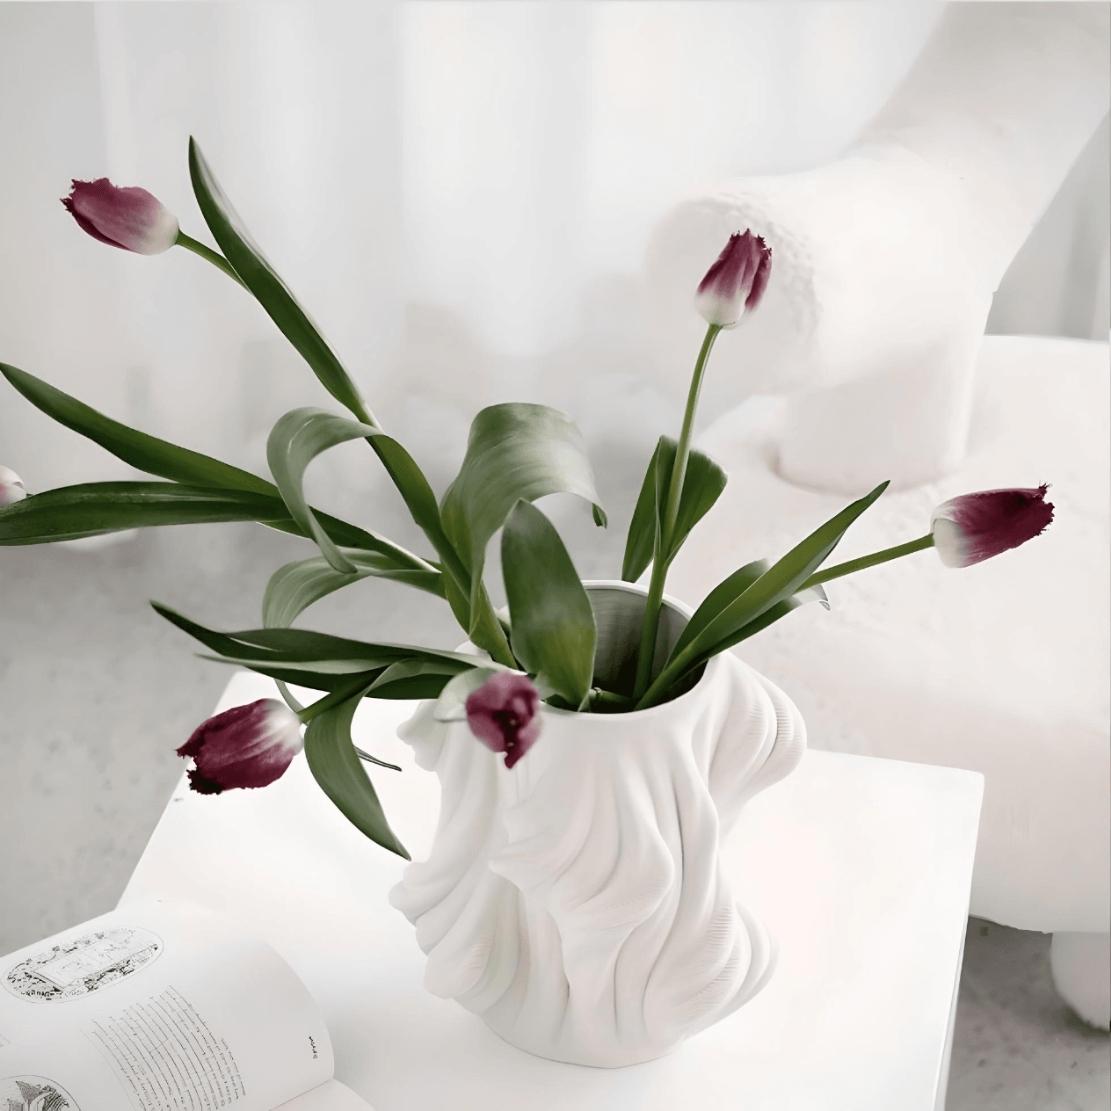 White, elegant ceramic vase with purple tulips